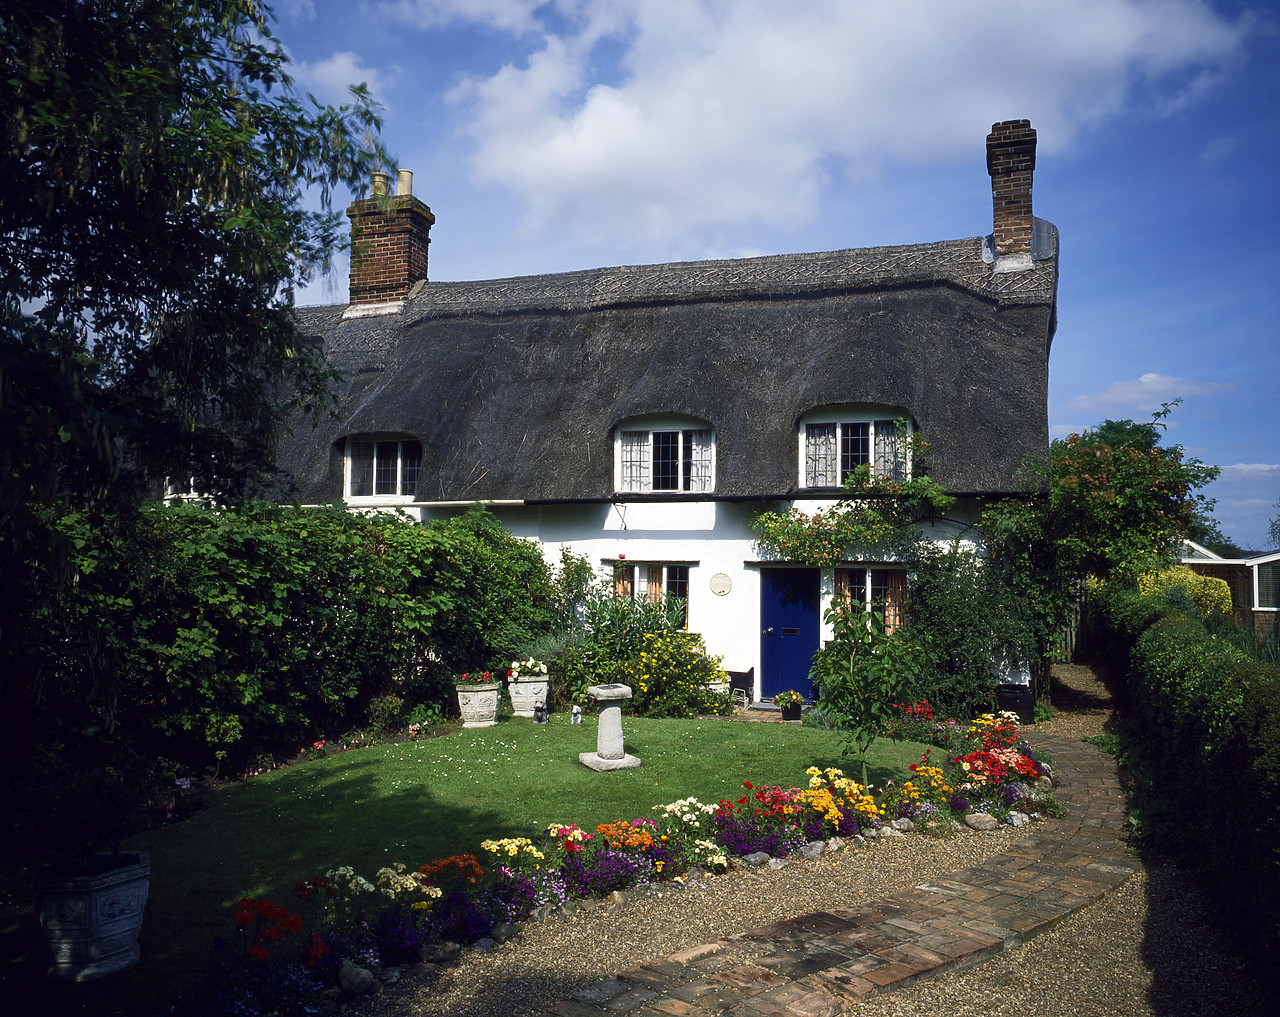 #881538-1 - Thatch Cottage & Garden, Brook, Norfolk, England